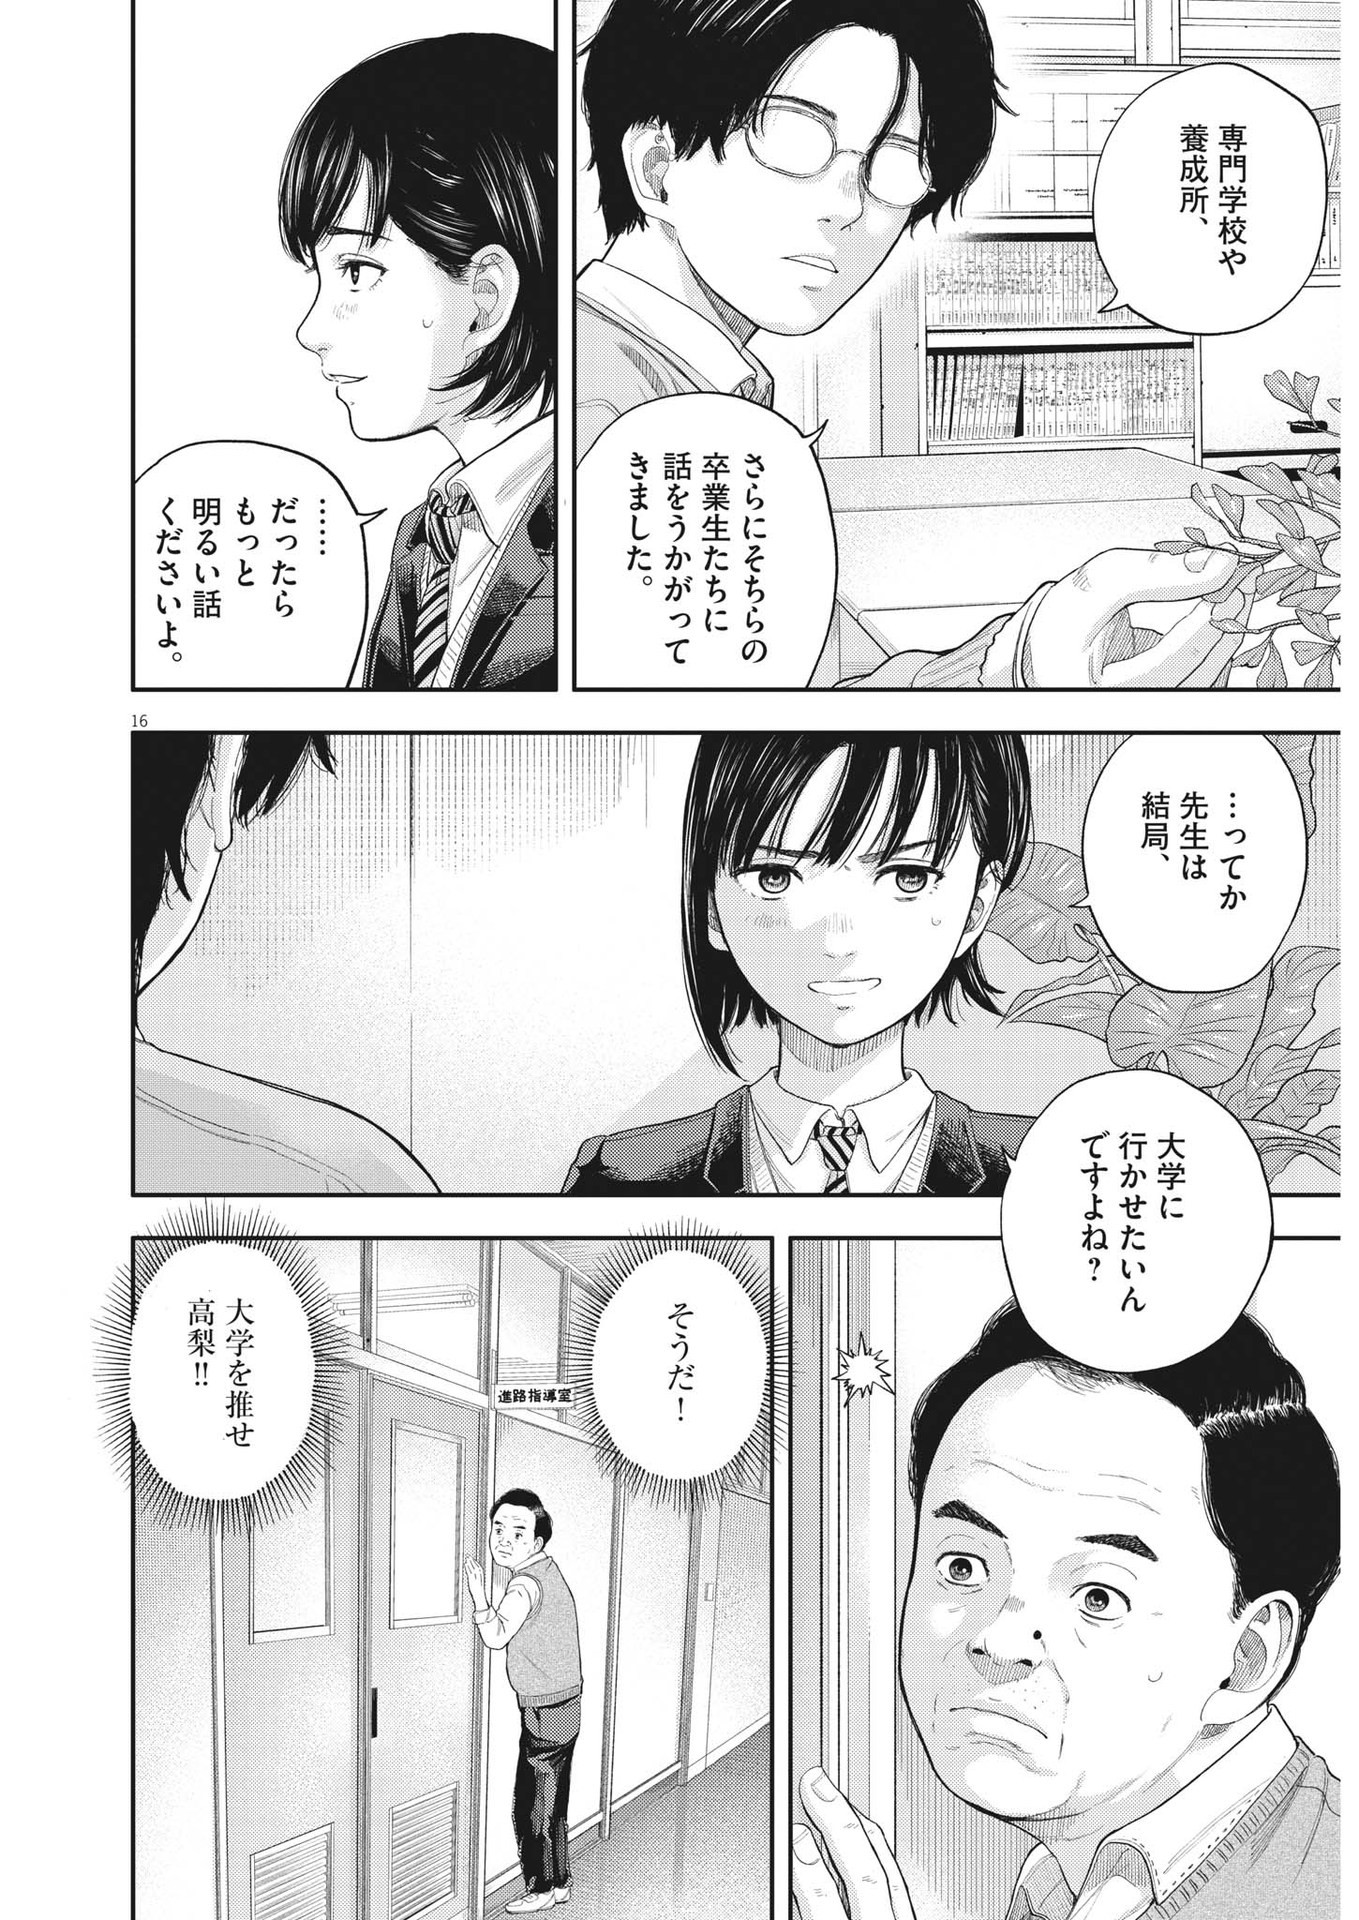 Yumenashi-sensei no Shinroshidou - Chapter 1 - Page 16